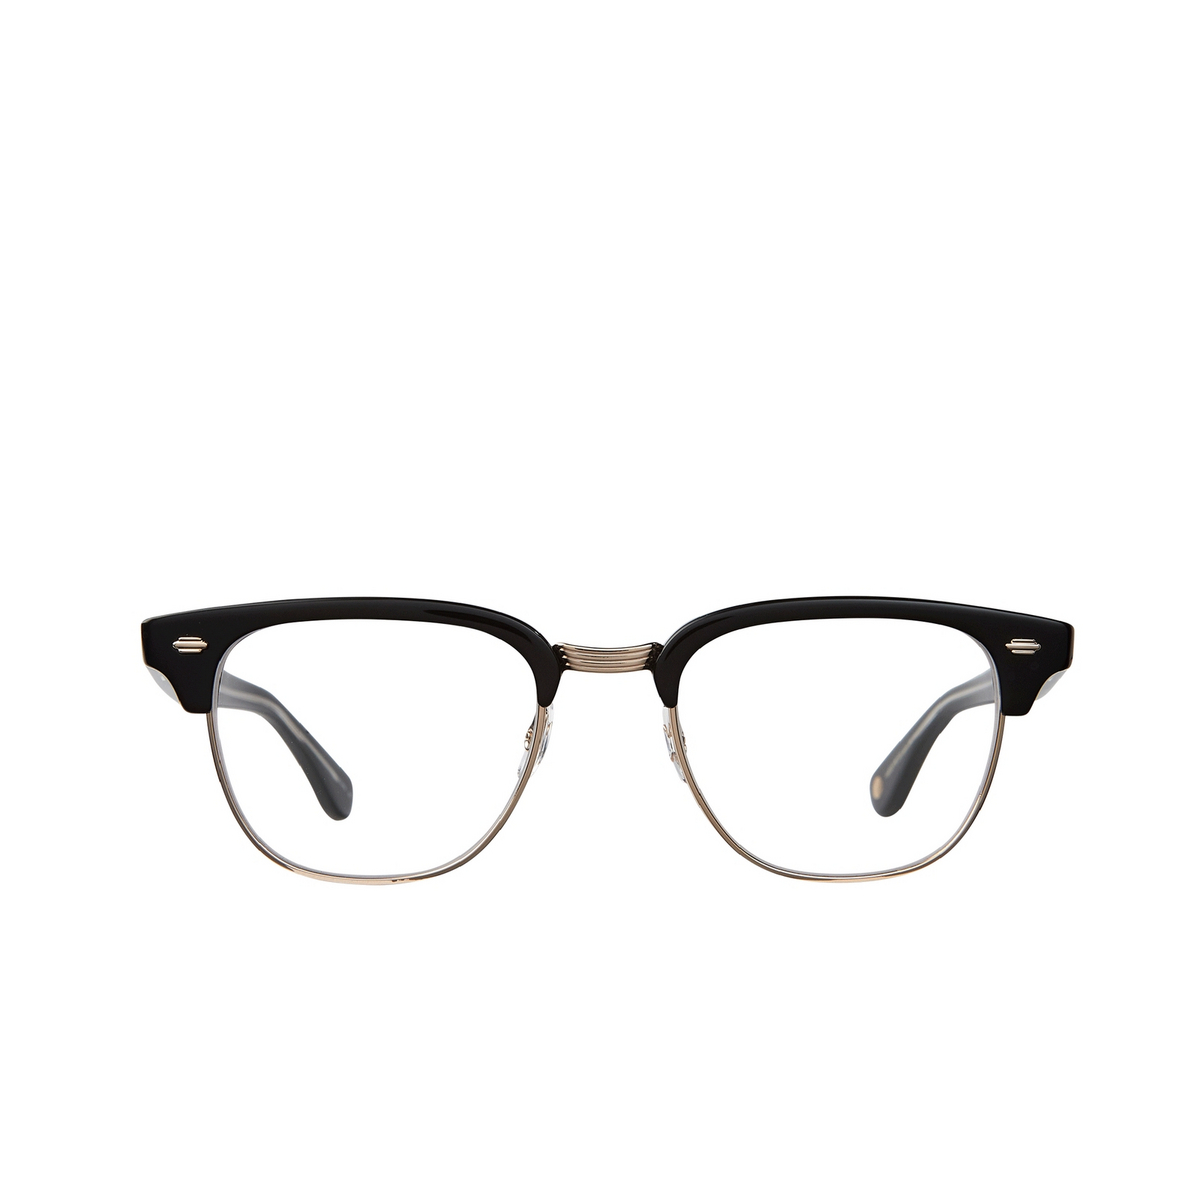 Garrett Leight ELKGROVE Eyeglasses BK-G Black-Gold - front view